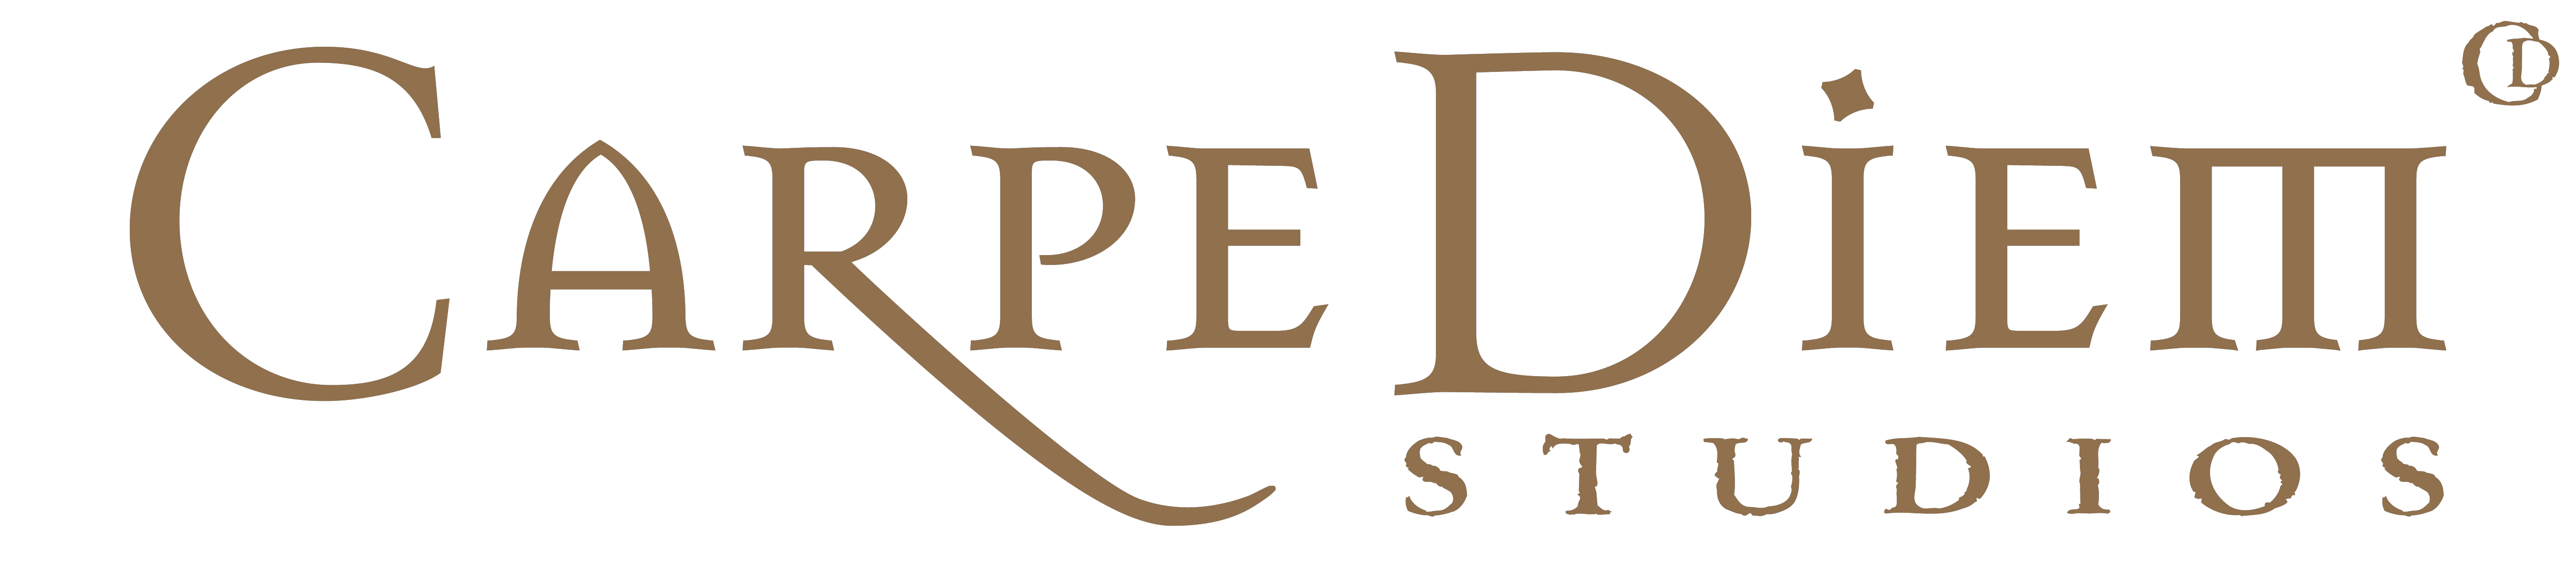 Carpe Diem Studios Logo